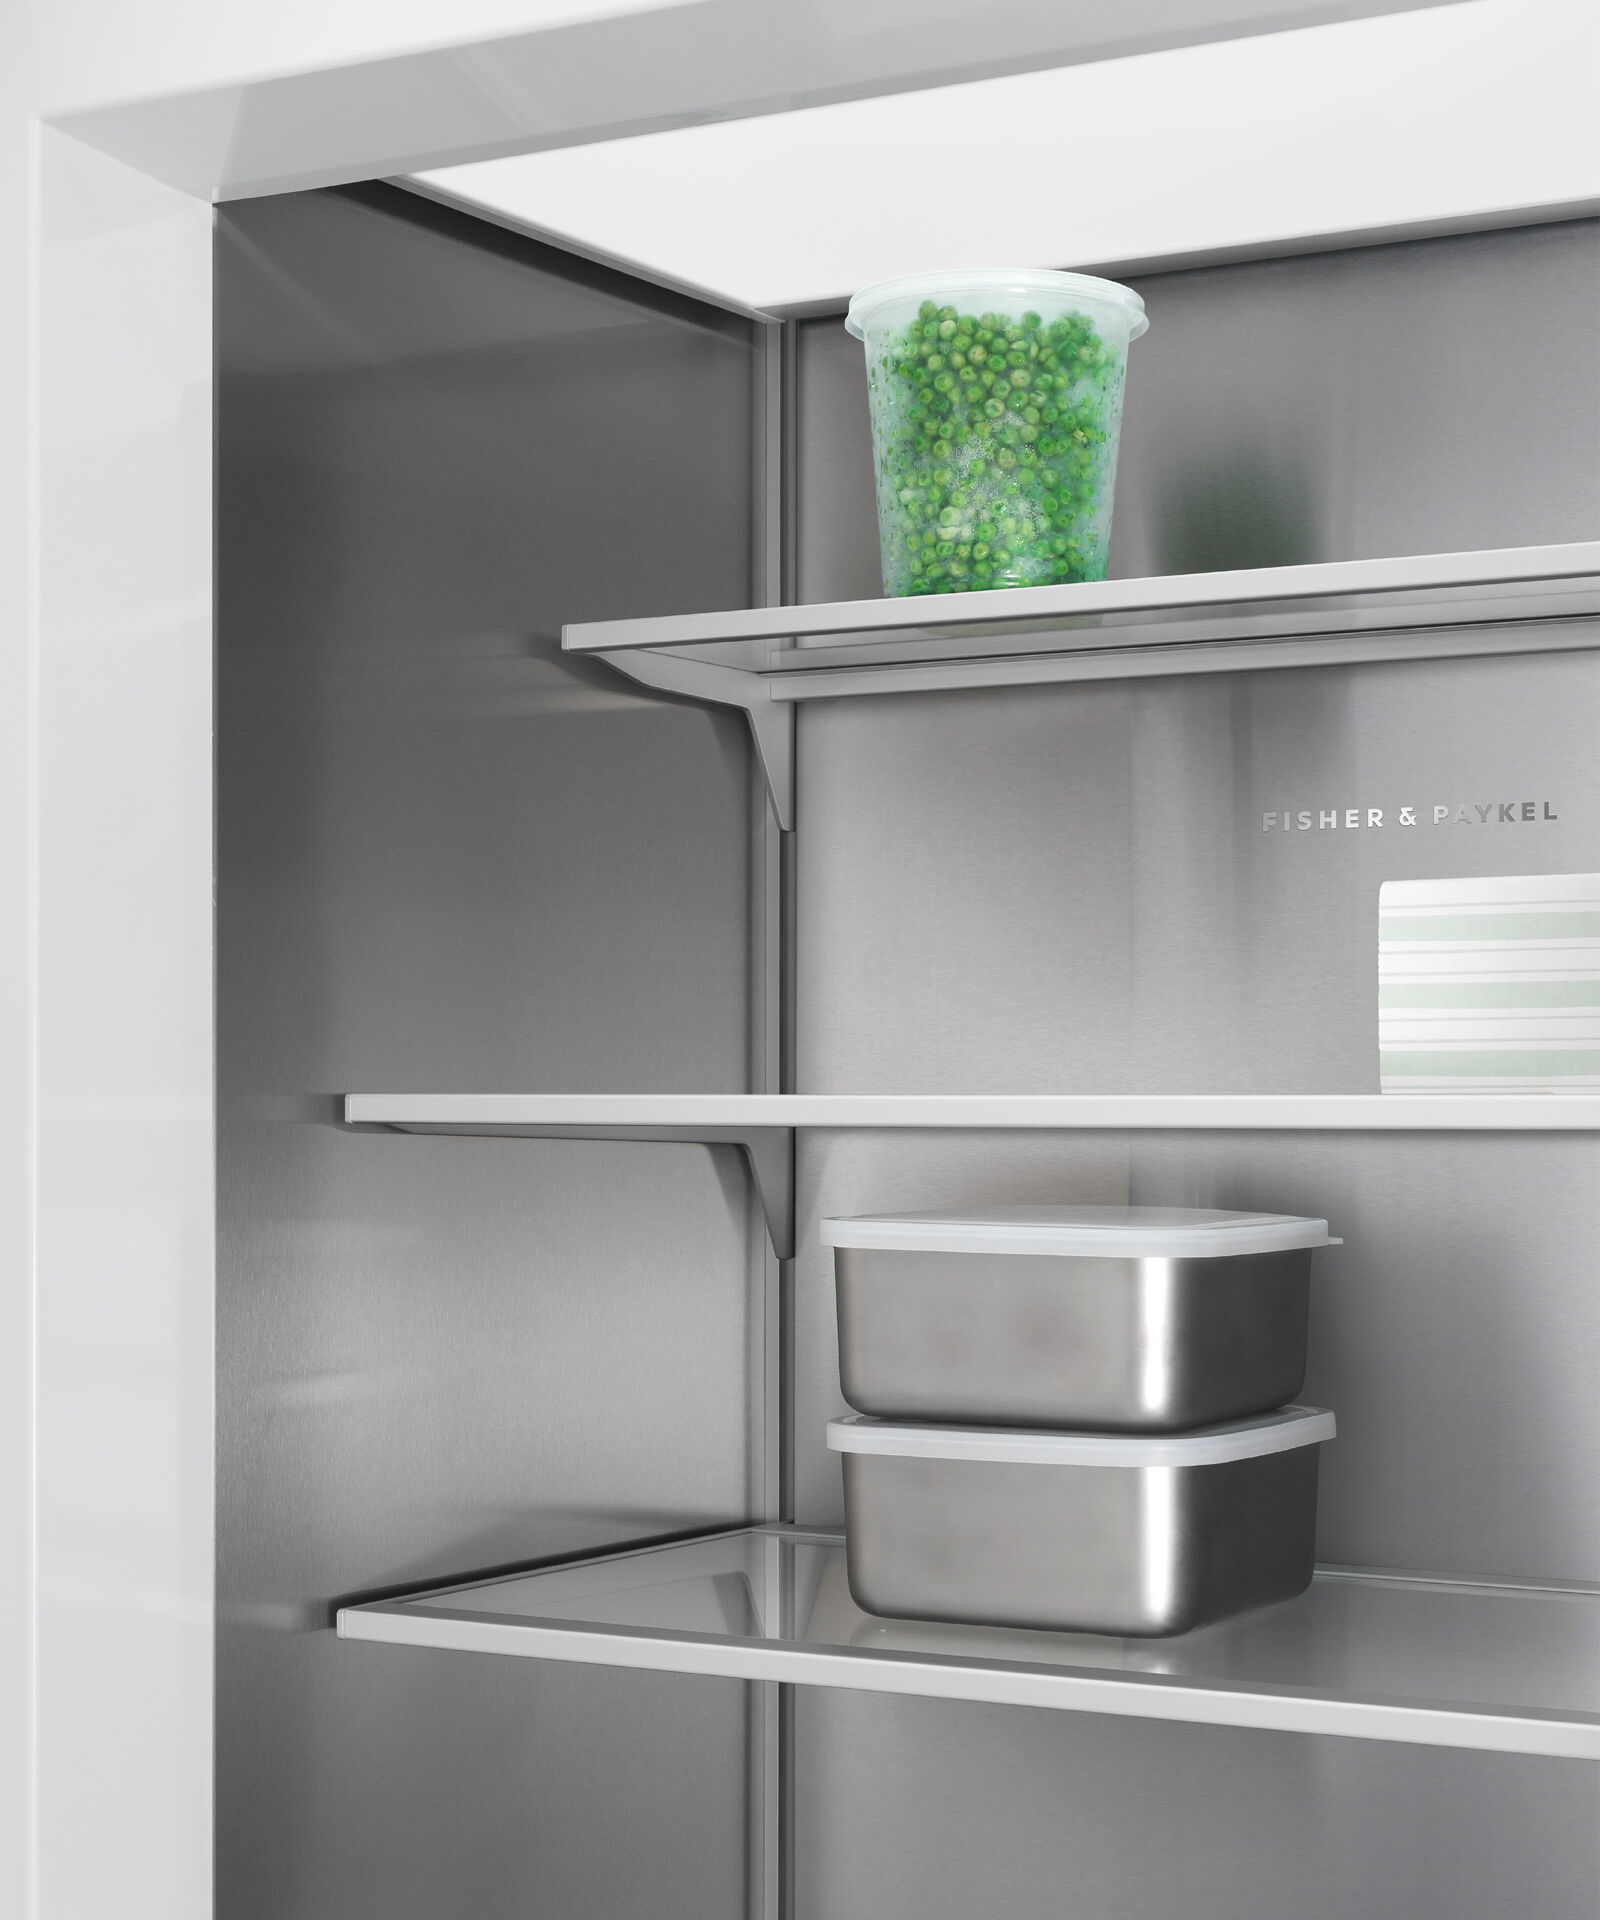 嵌入式立式冷凍櫃, 76cm, 自動製冰 gallery image 18.0